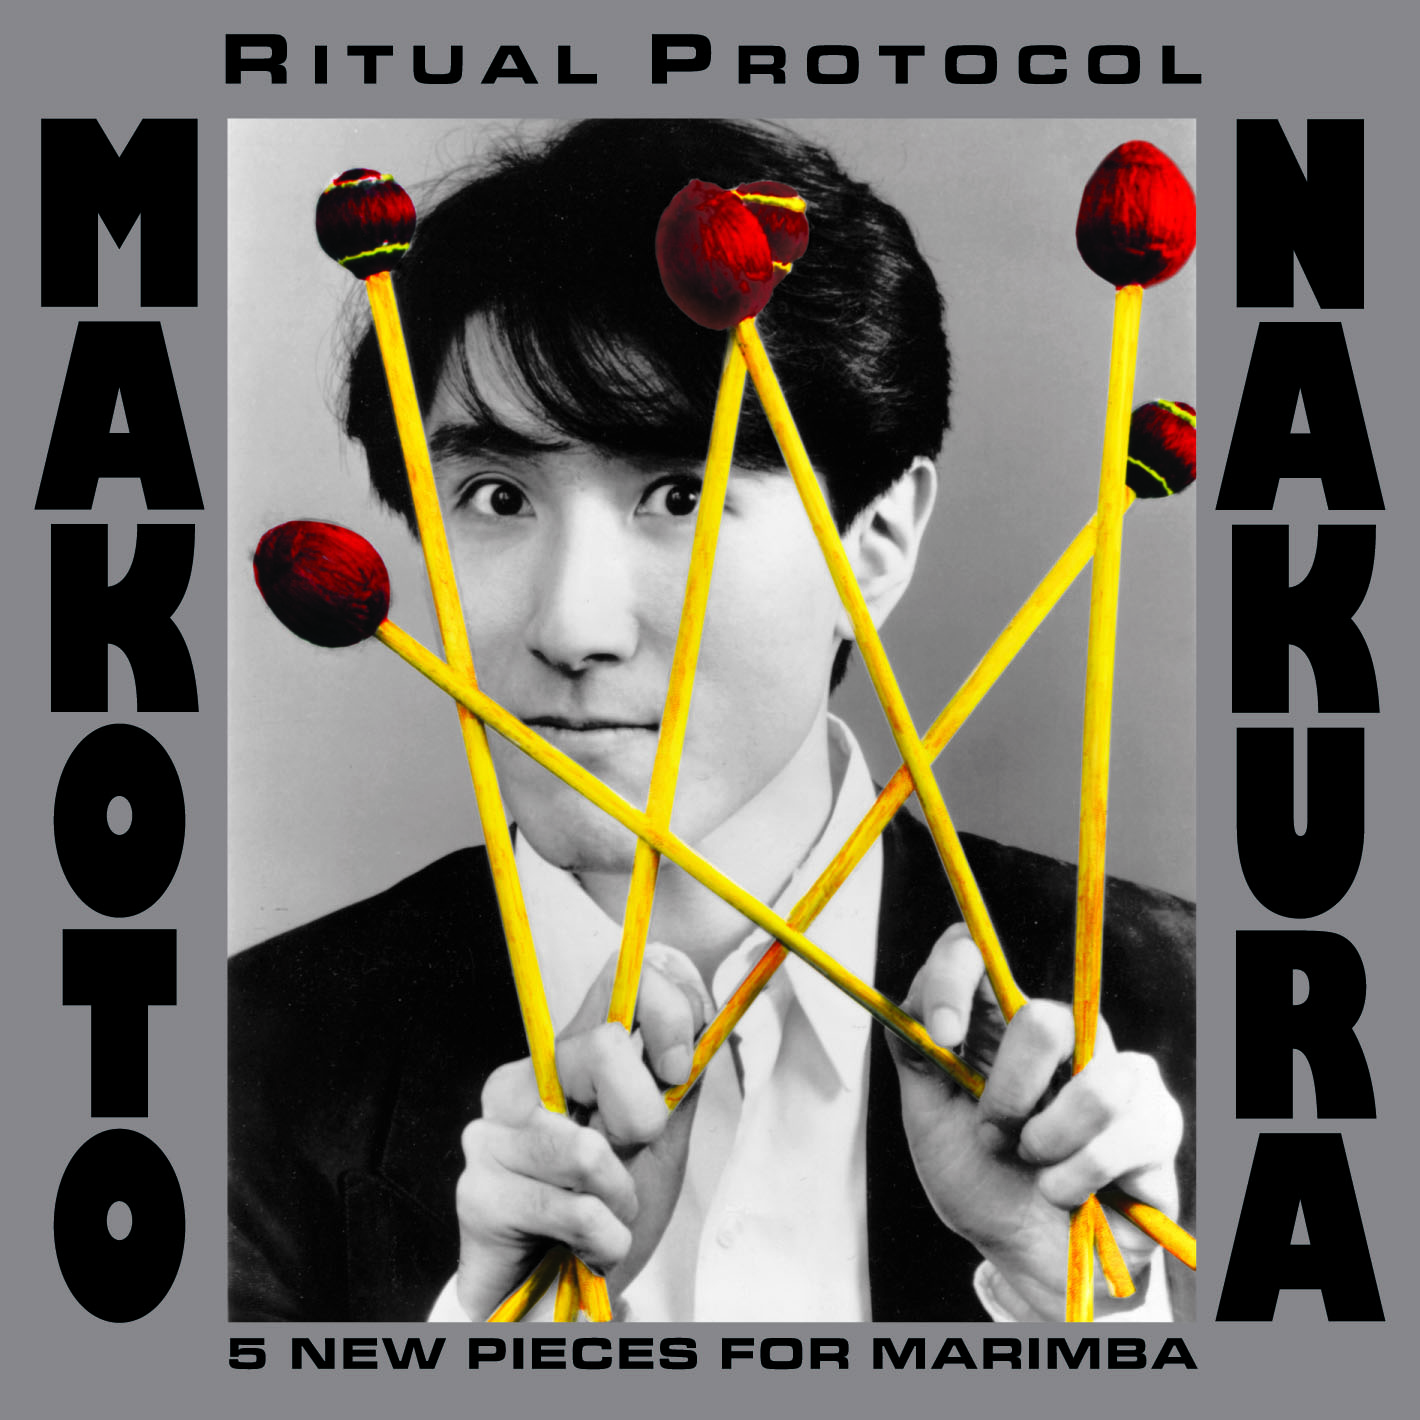 Makoto Nakura - Ritual Protocol